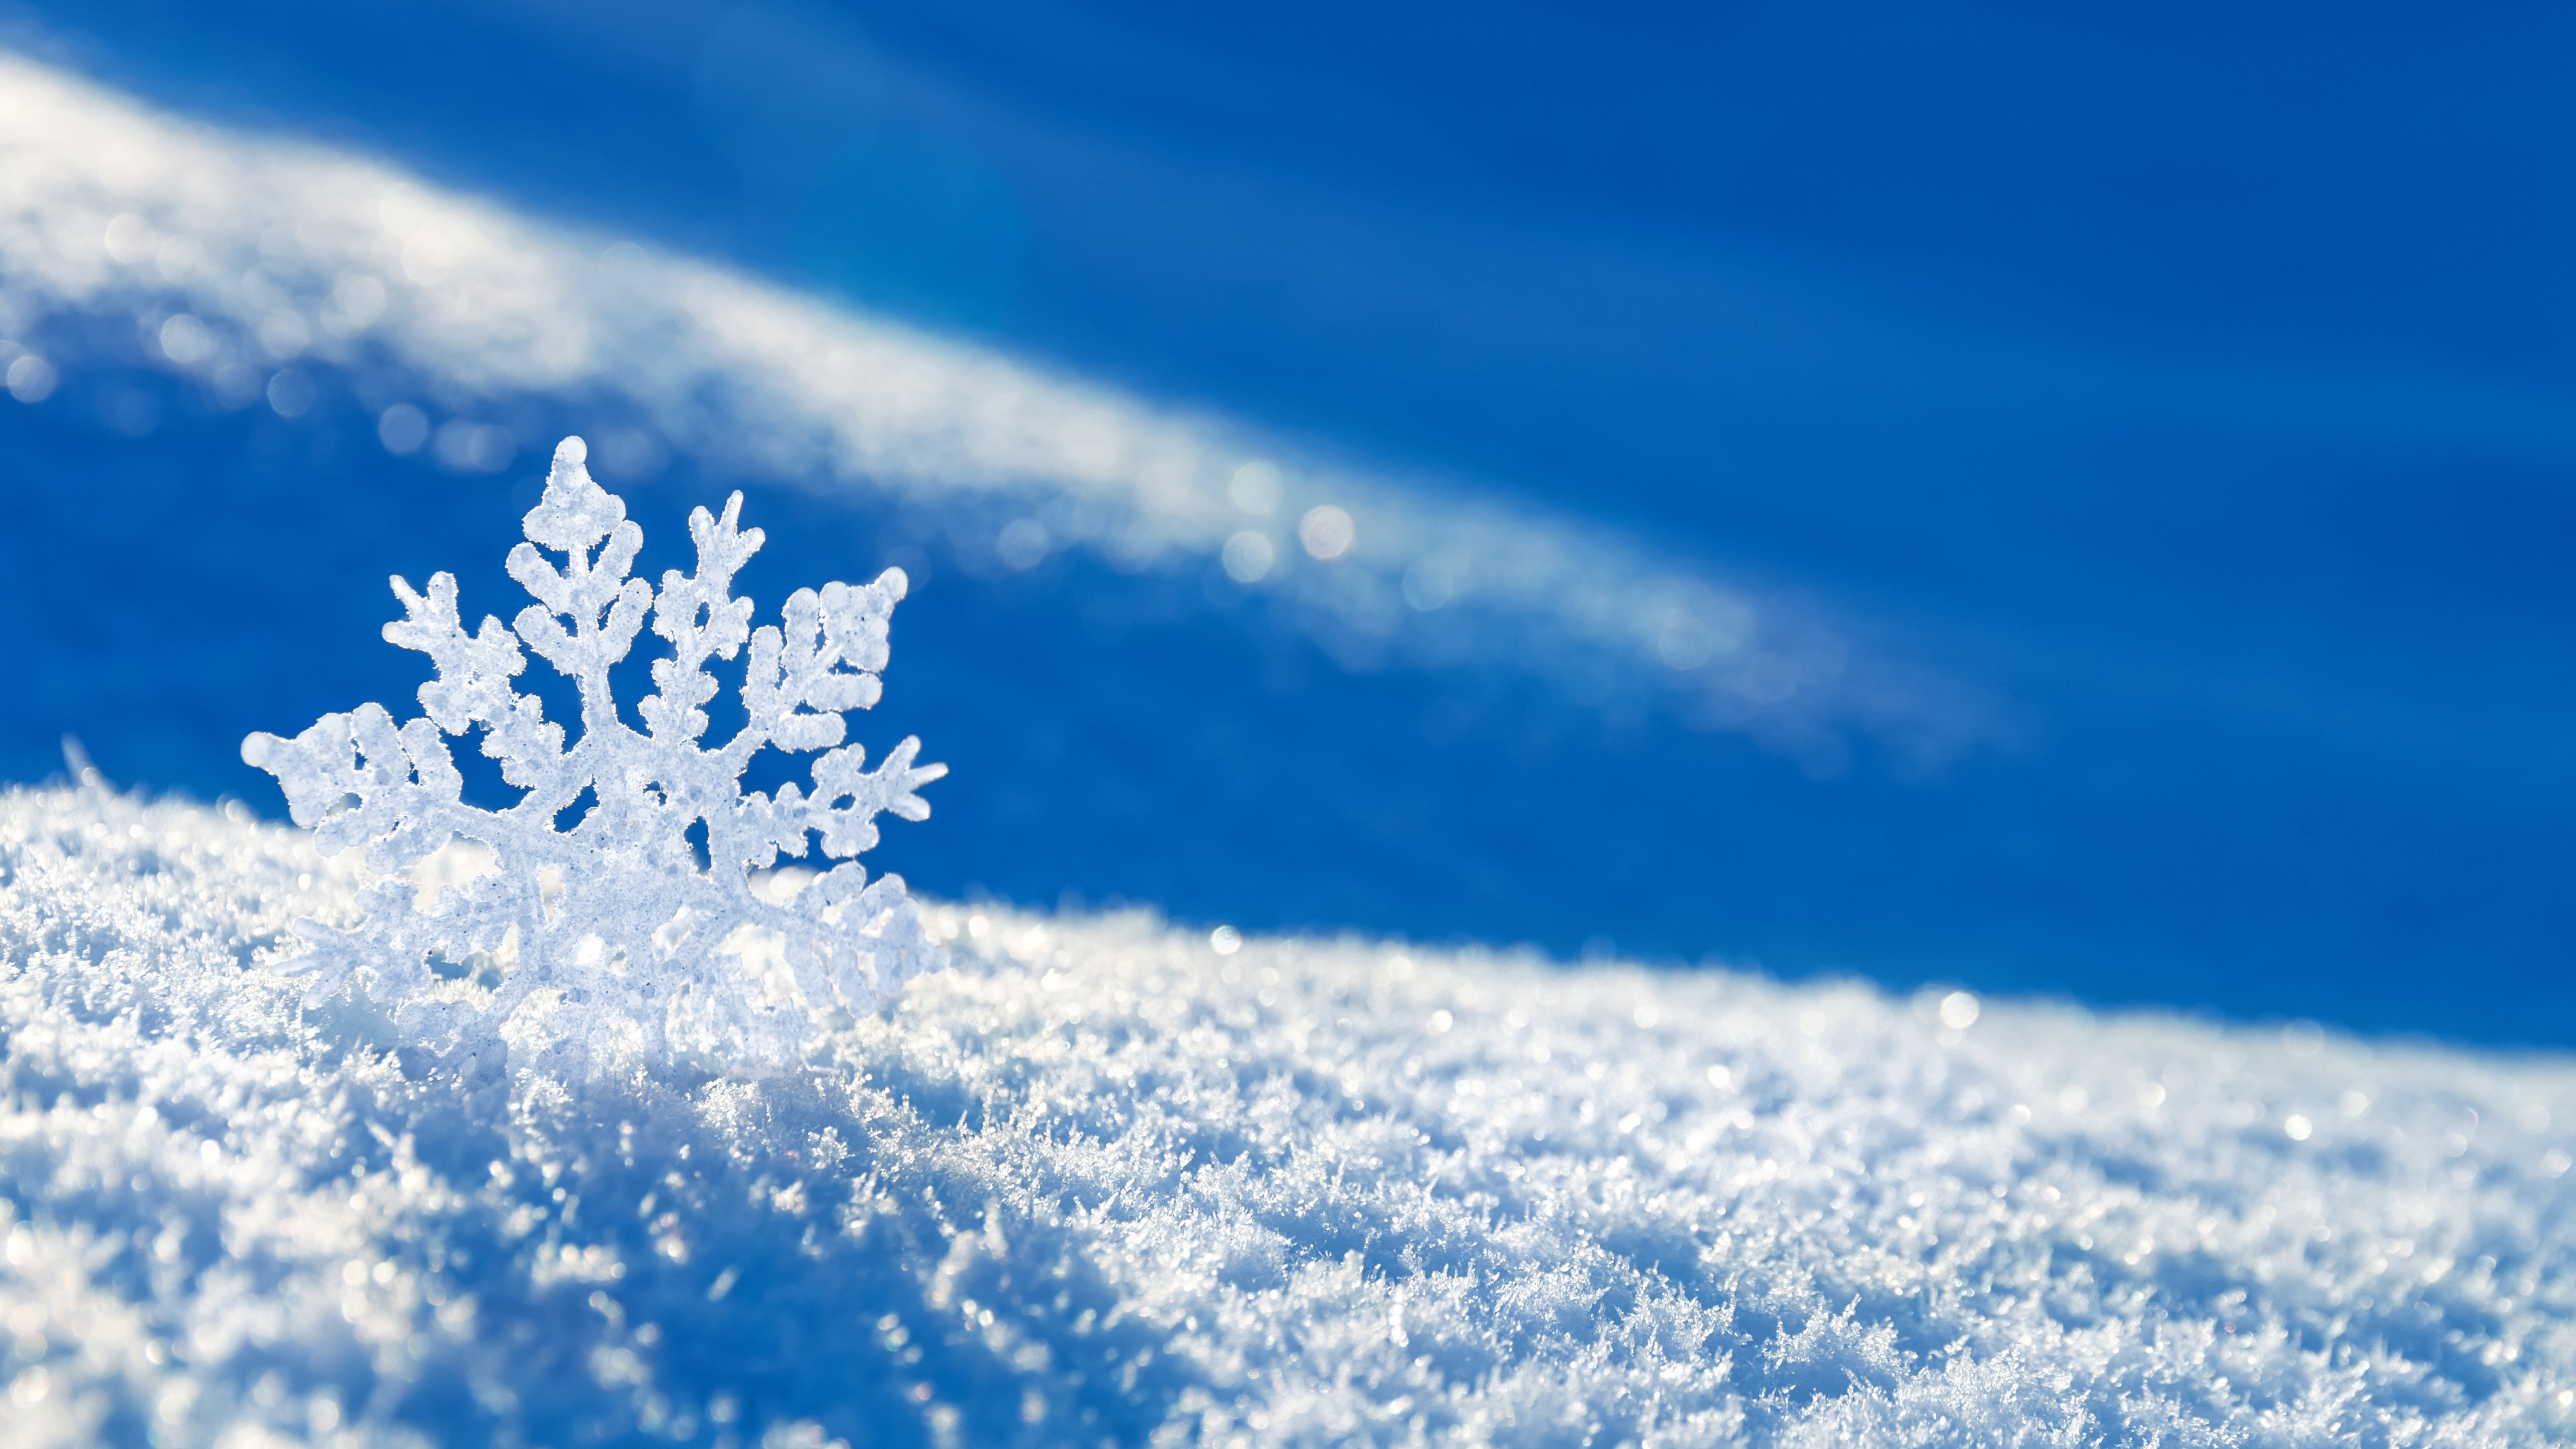 冬天, 冻结, 雪花, Fir, 天空 壁纸 3840x2160 允许